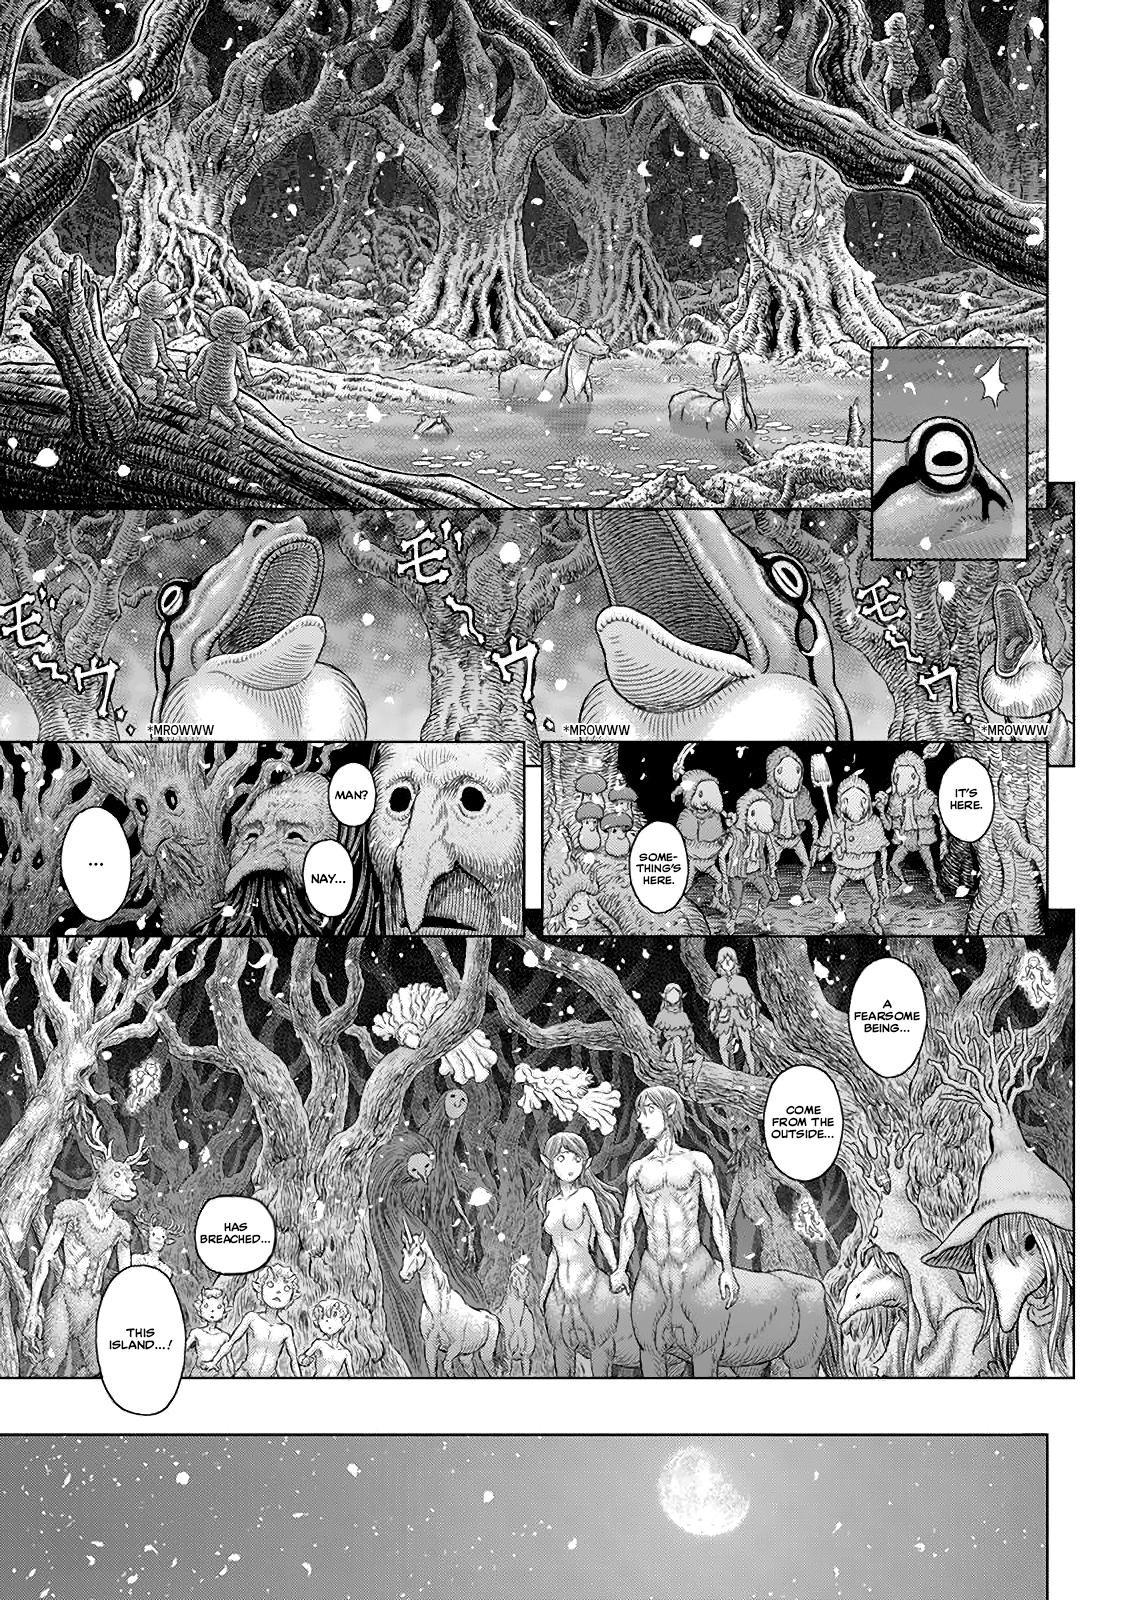 Berserk Manga Chapter 365 image 04